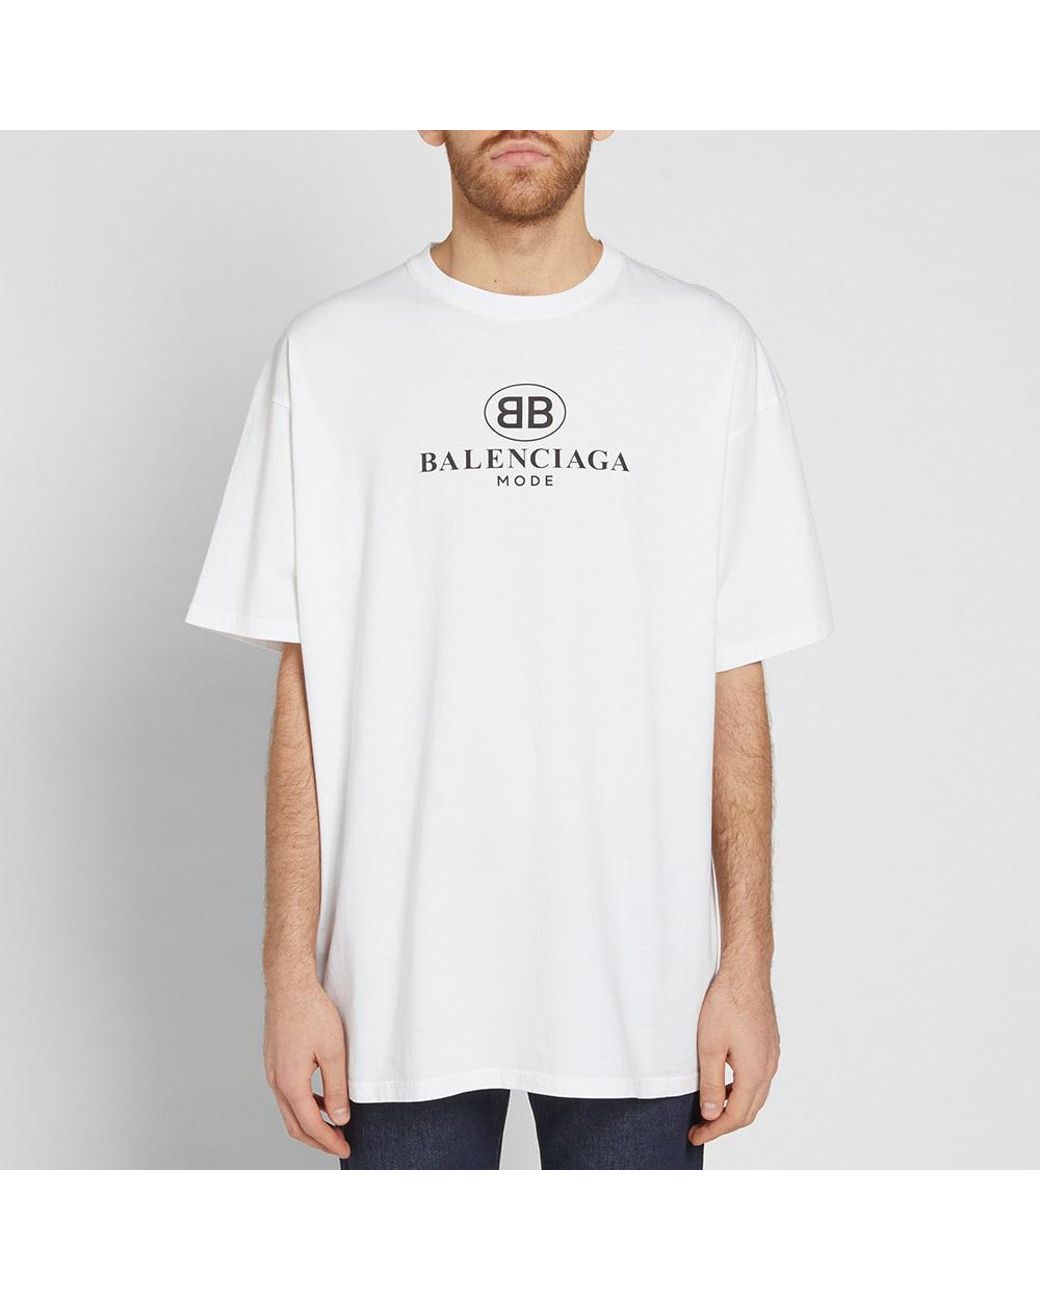 Balenciaga Bb Mode T-shirt Men Lyst